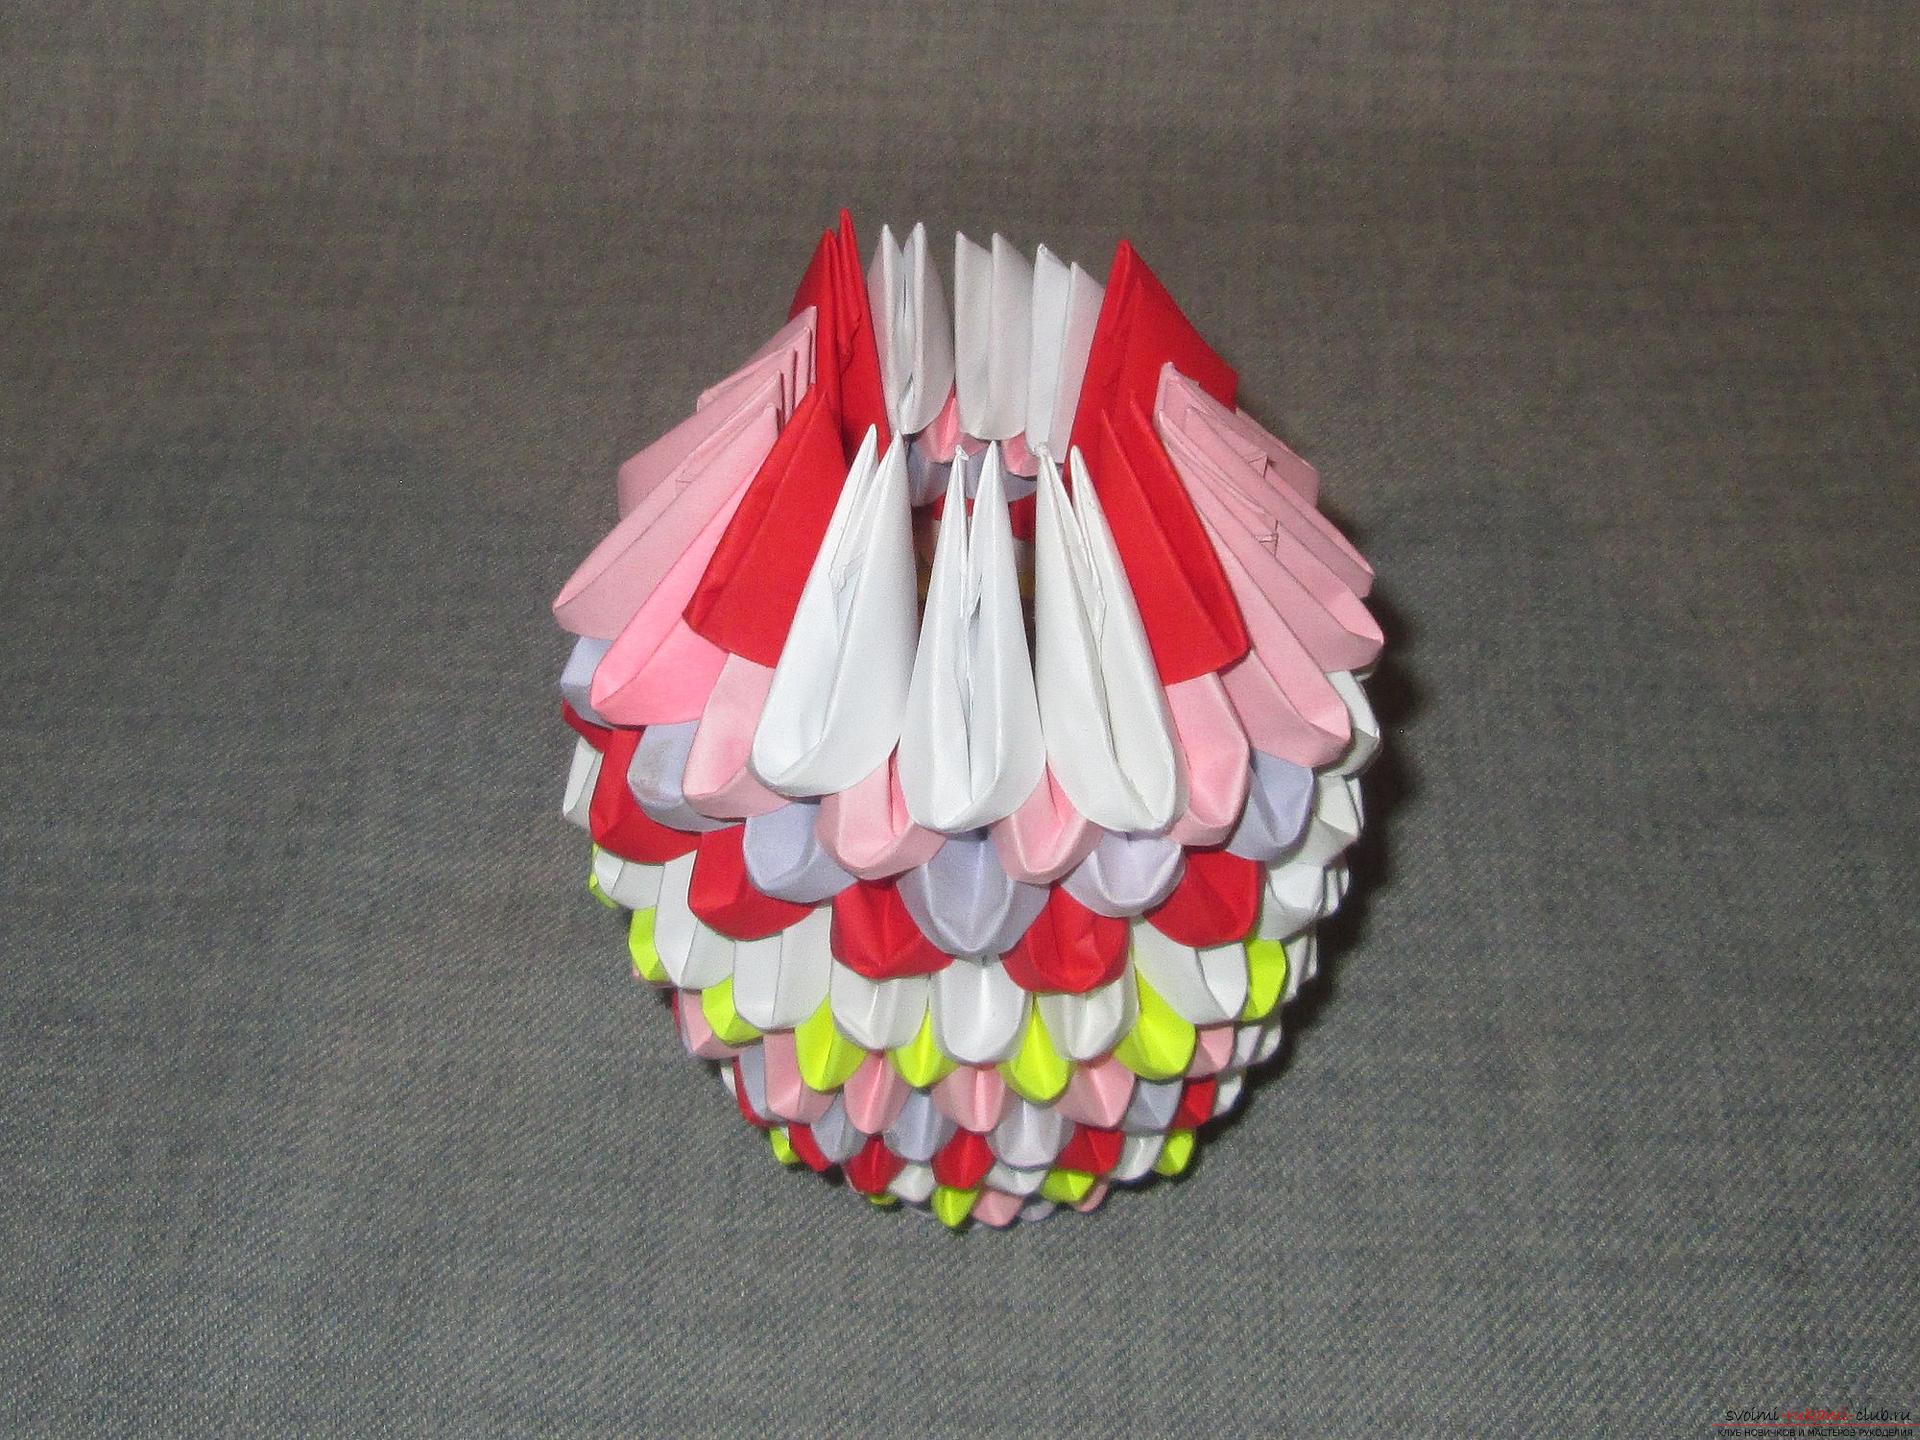 Als je wilt leren hoe je modulaire origami maakt, bekijk dan onze masterclass. Foto # 25